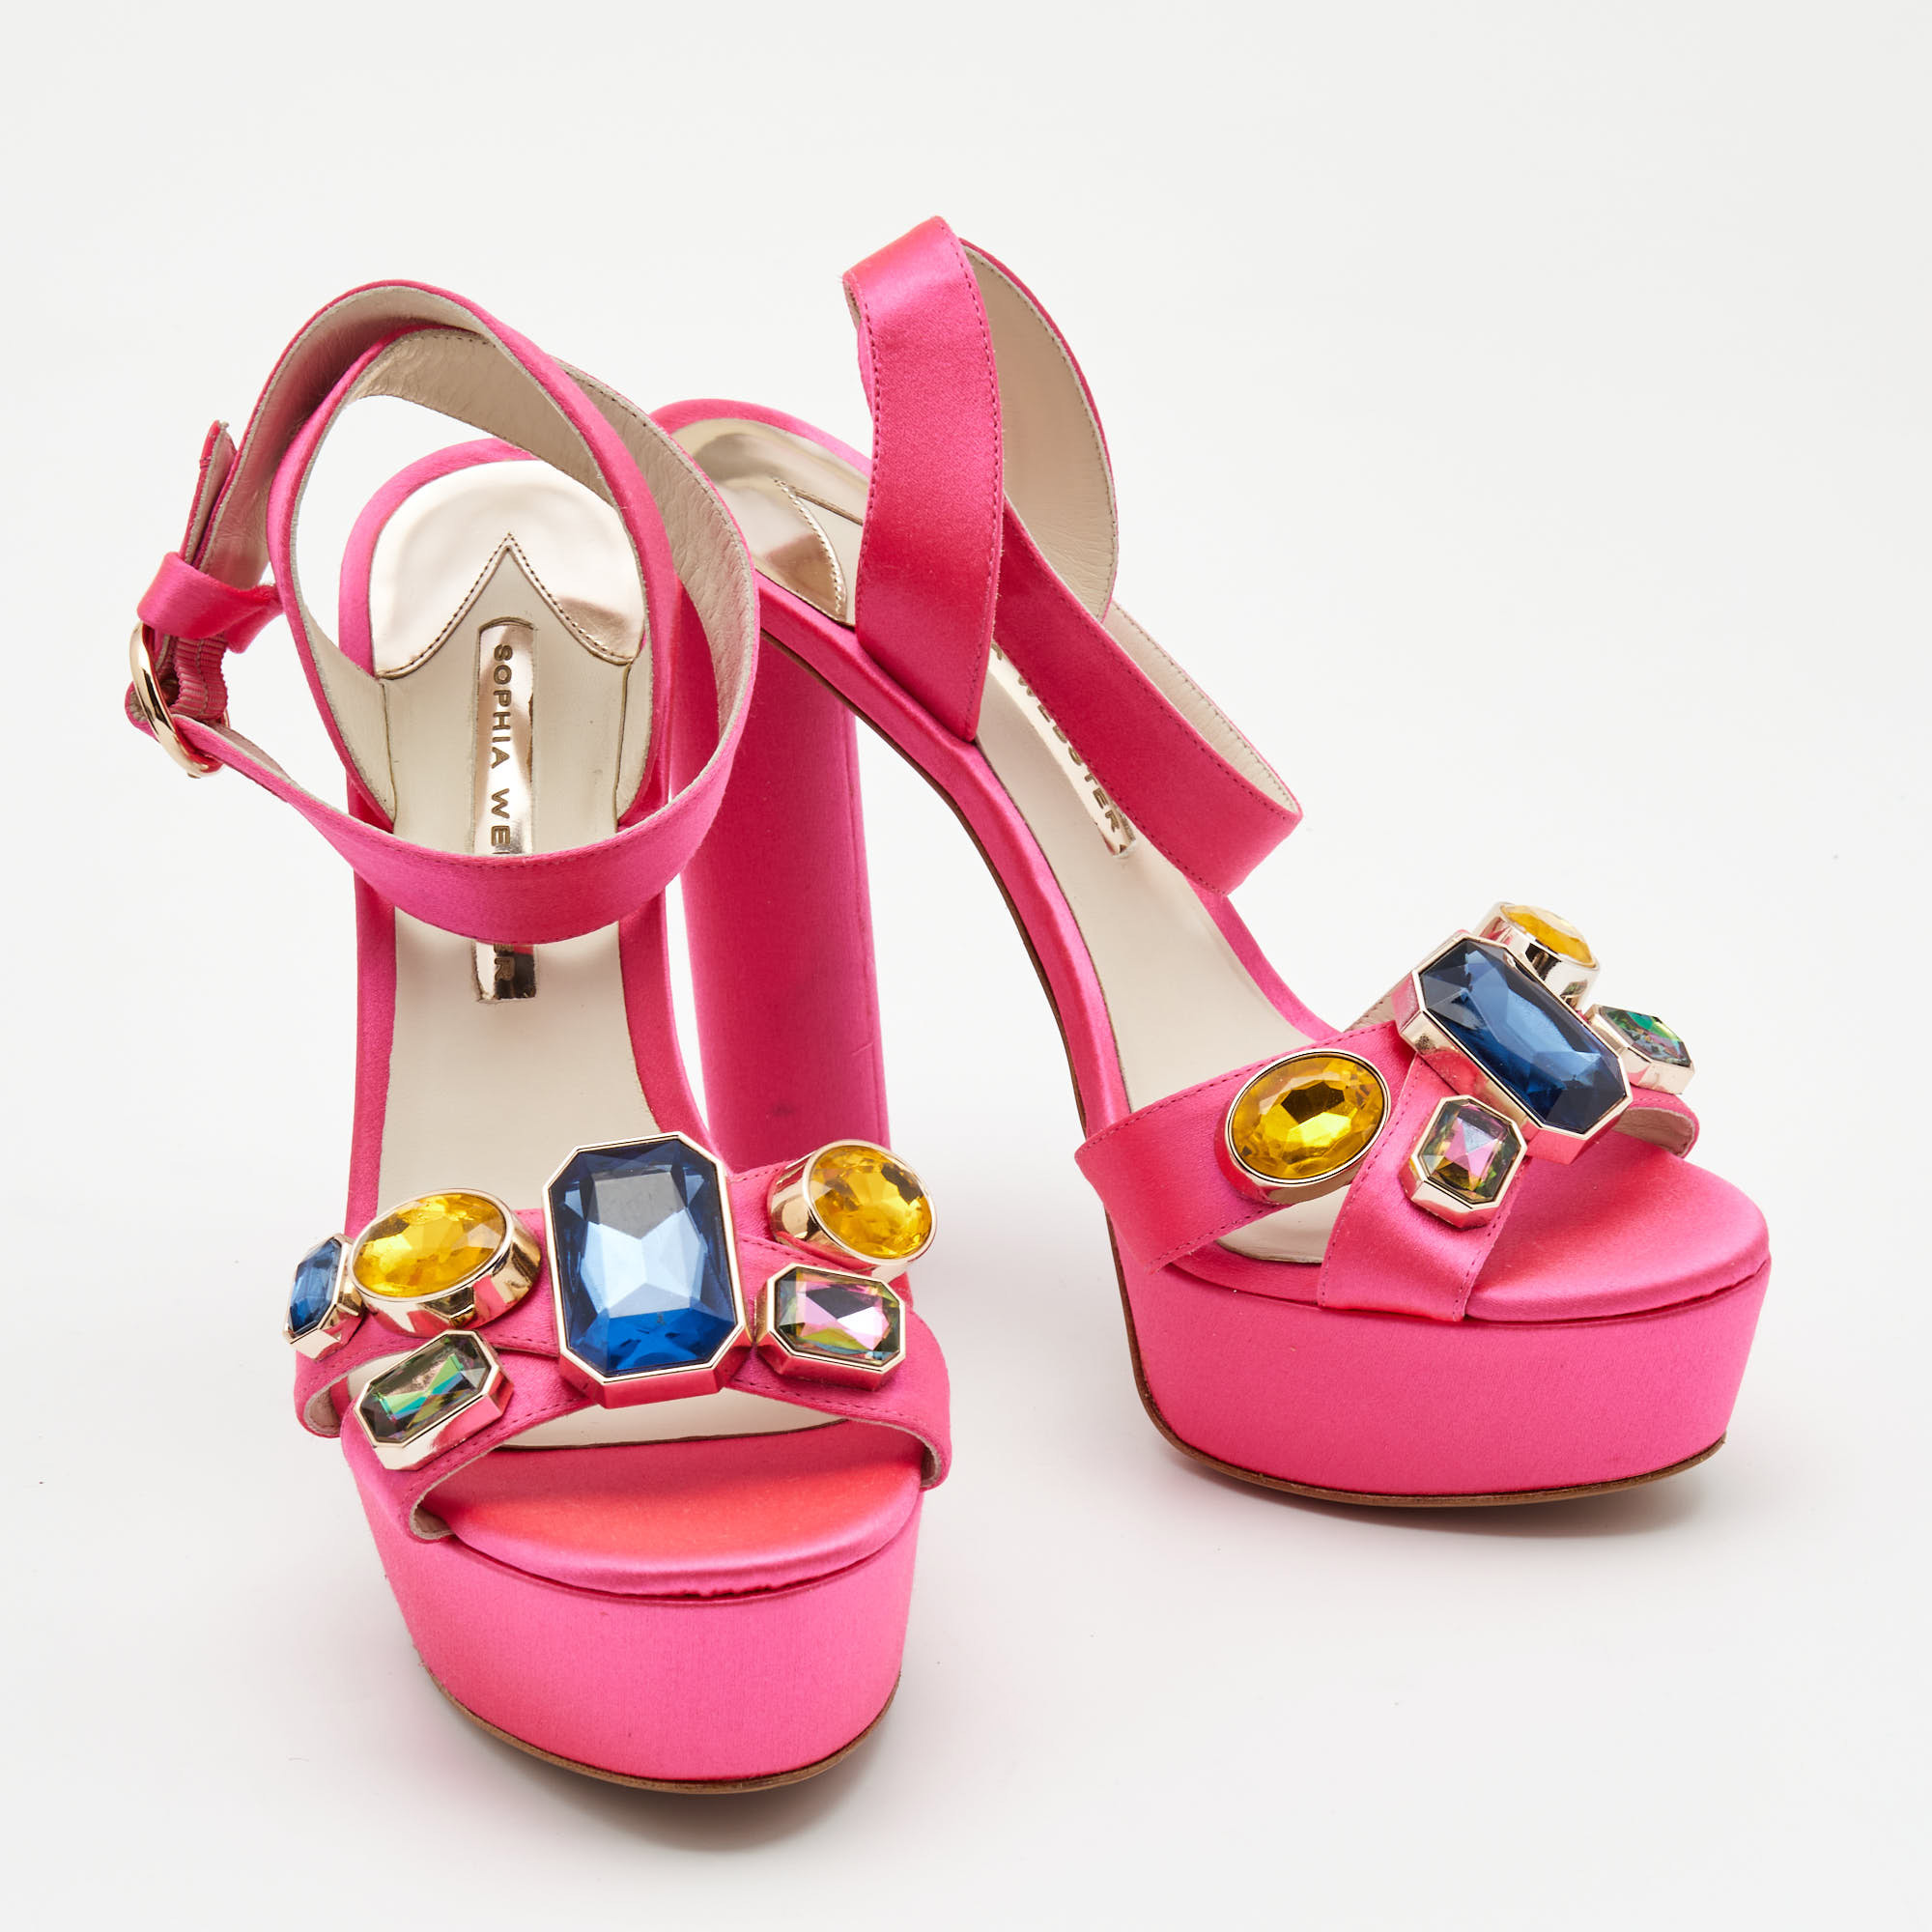 Sophia Webster Pink Satin Crystal Embellished Amanda Sandals Size 39